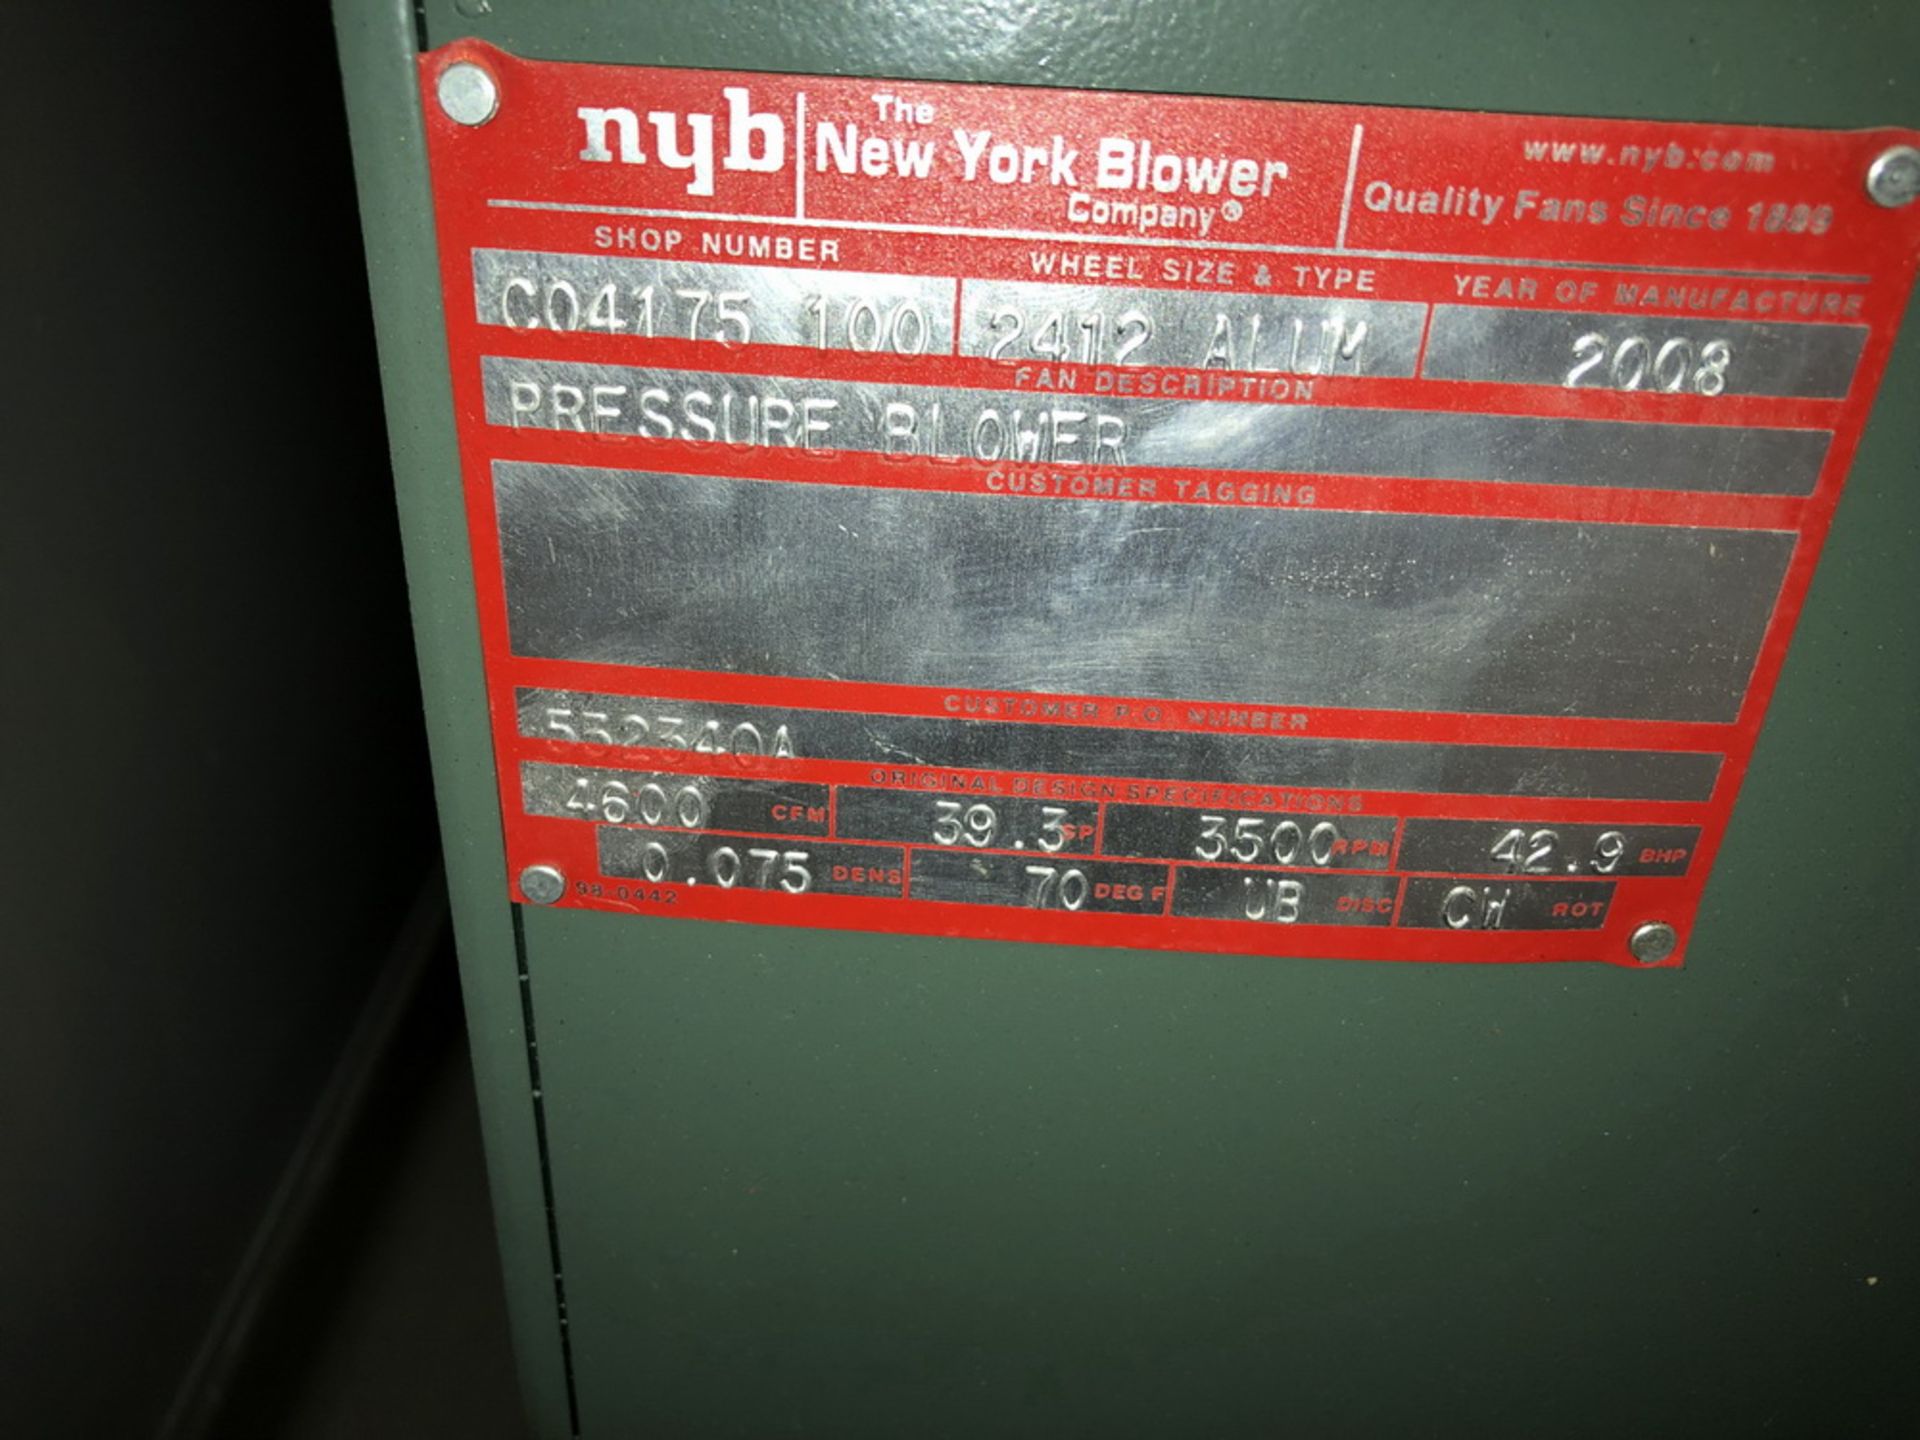 NYB (New York Blower) 50HP Blower, new 2008 - Image 2 of 3